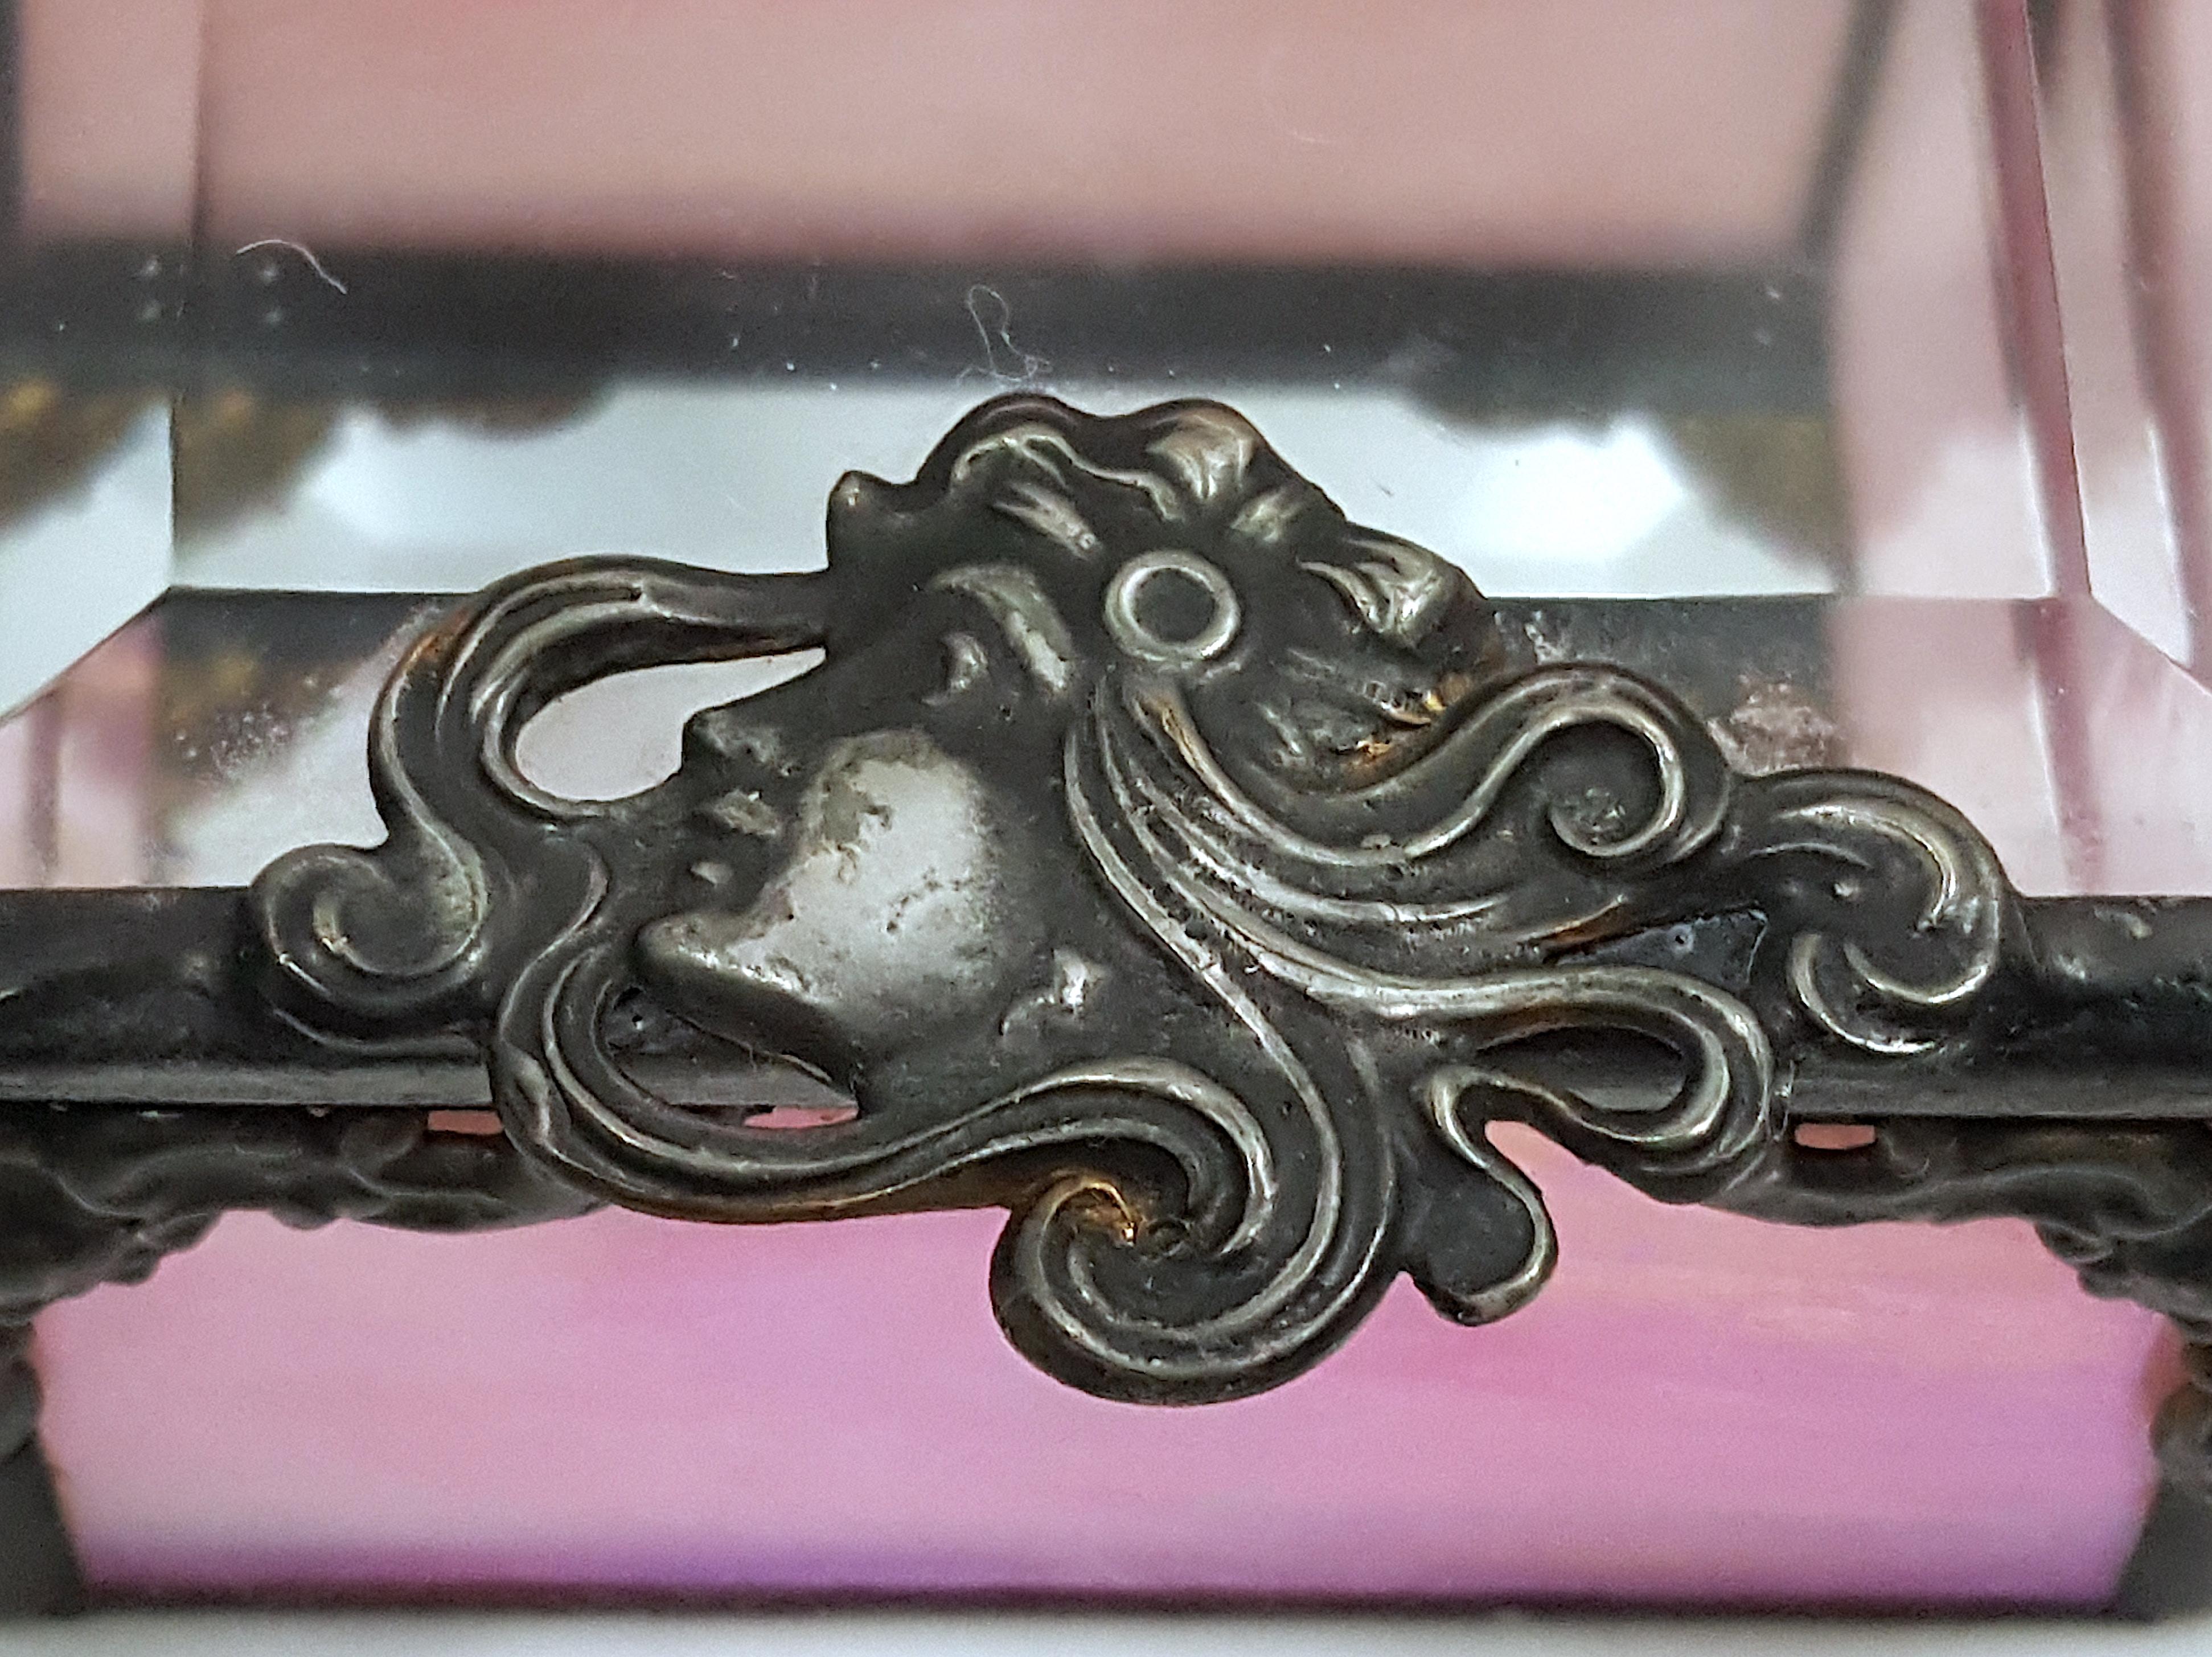 Influencée par les illustrations Art-Nouveau d'Alphonse Mucha, cette ancienne boîte à bijoux française est décorée de plaques en bas-relief en bronze argenté ou en laiton, dominées par la tête courbée d'une dame profilée dont les cheveux